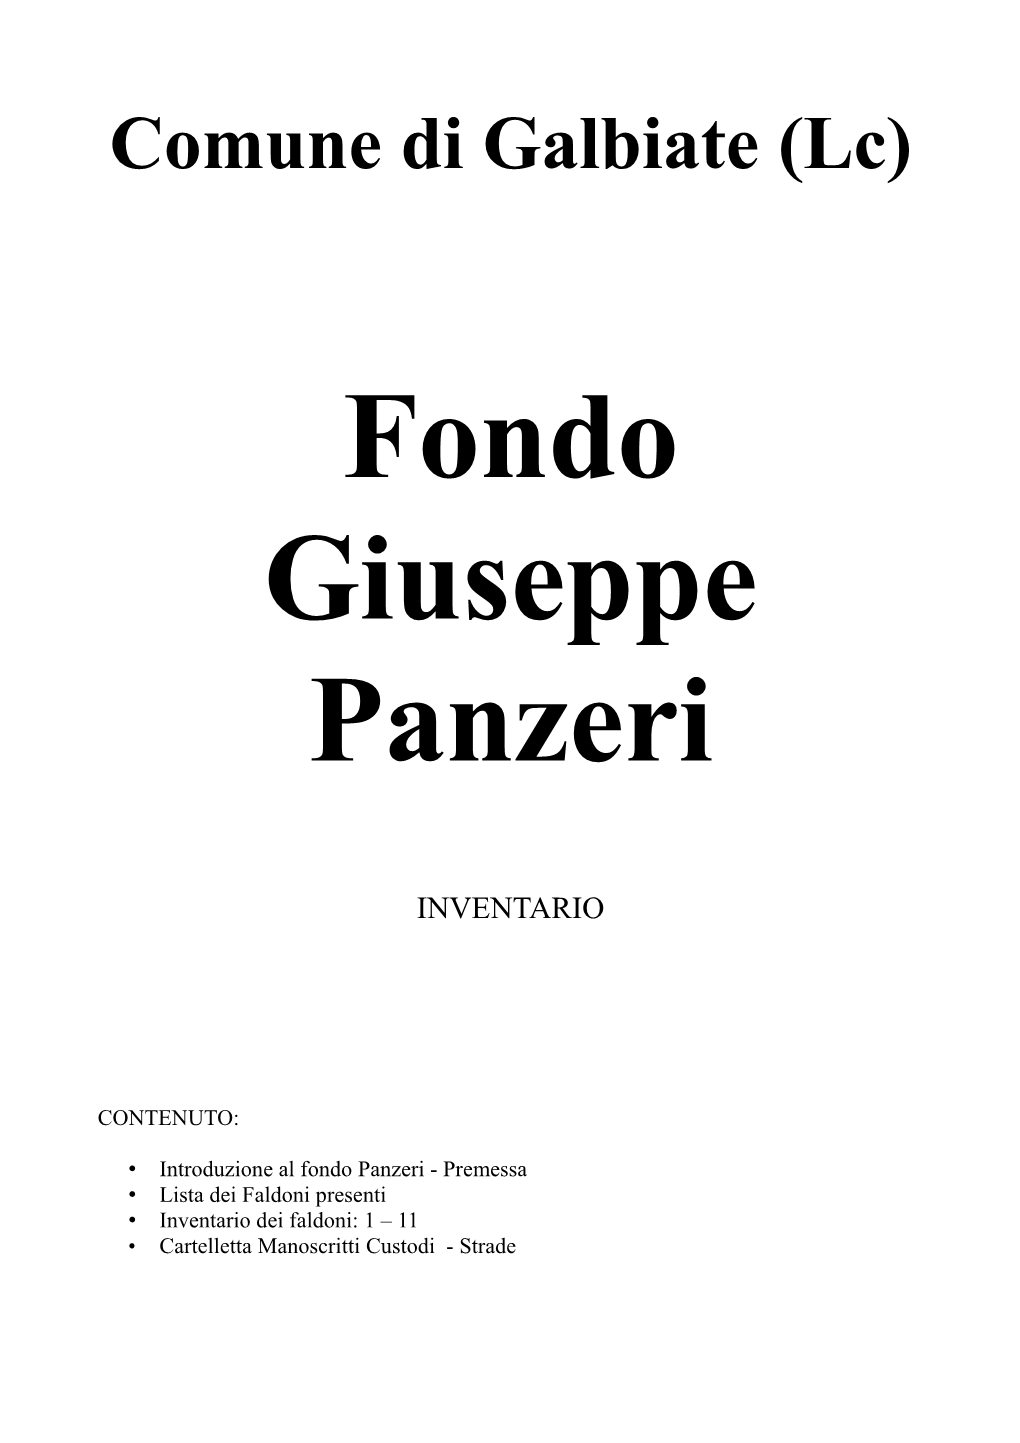 Fondo Giuseppe Panzeri